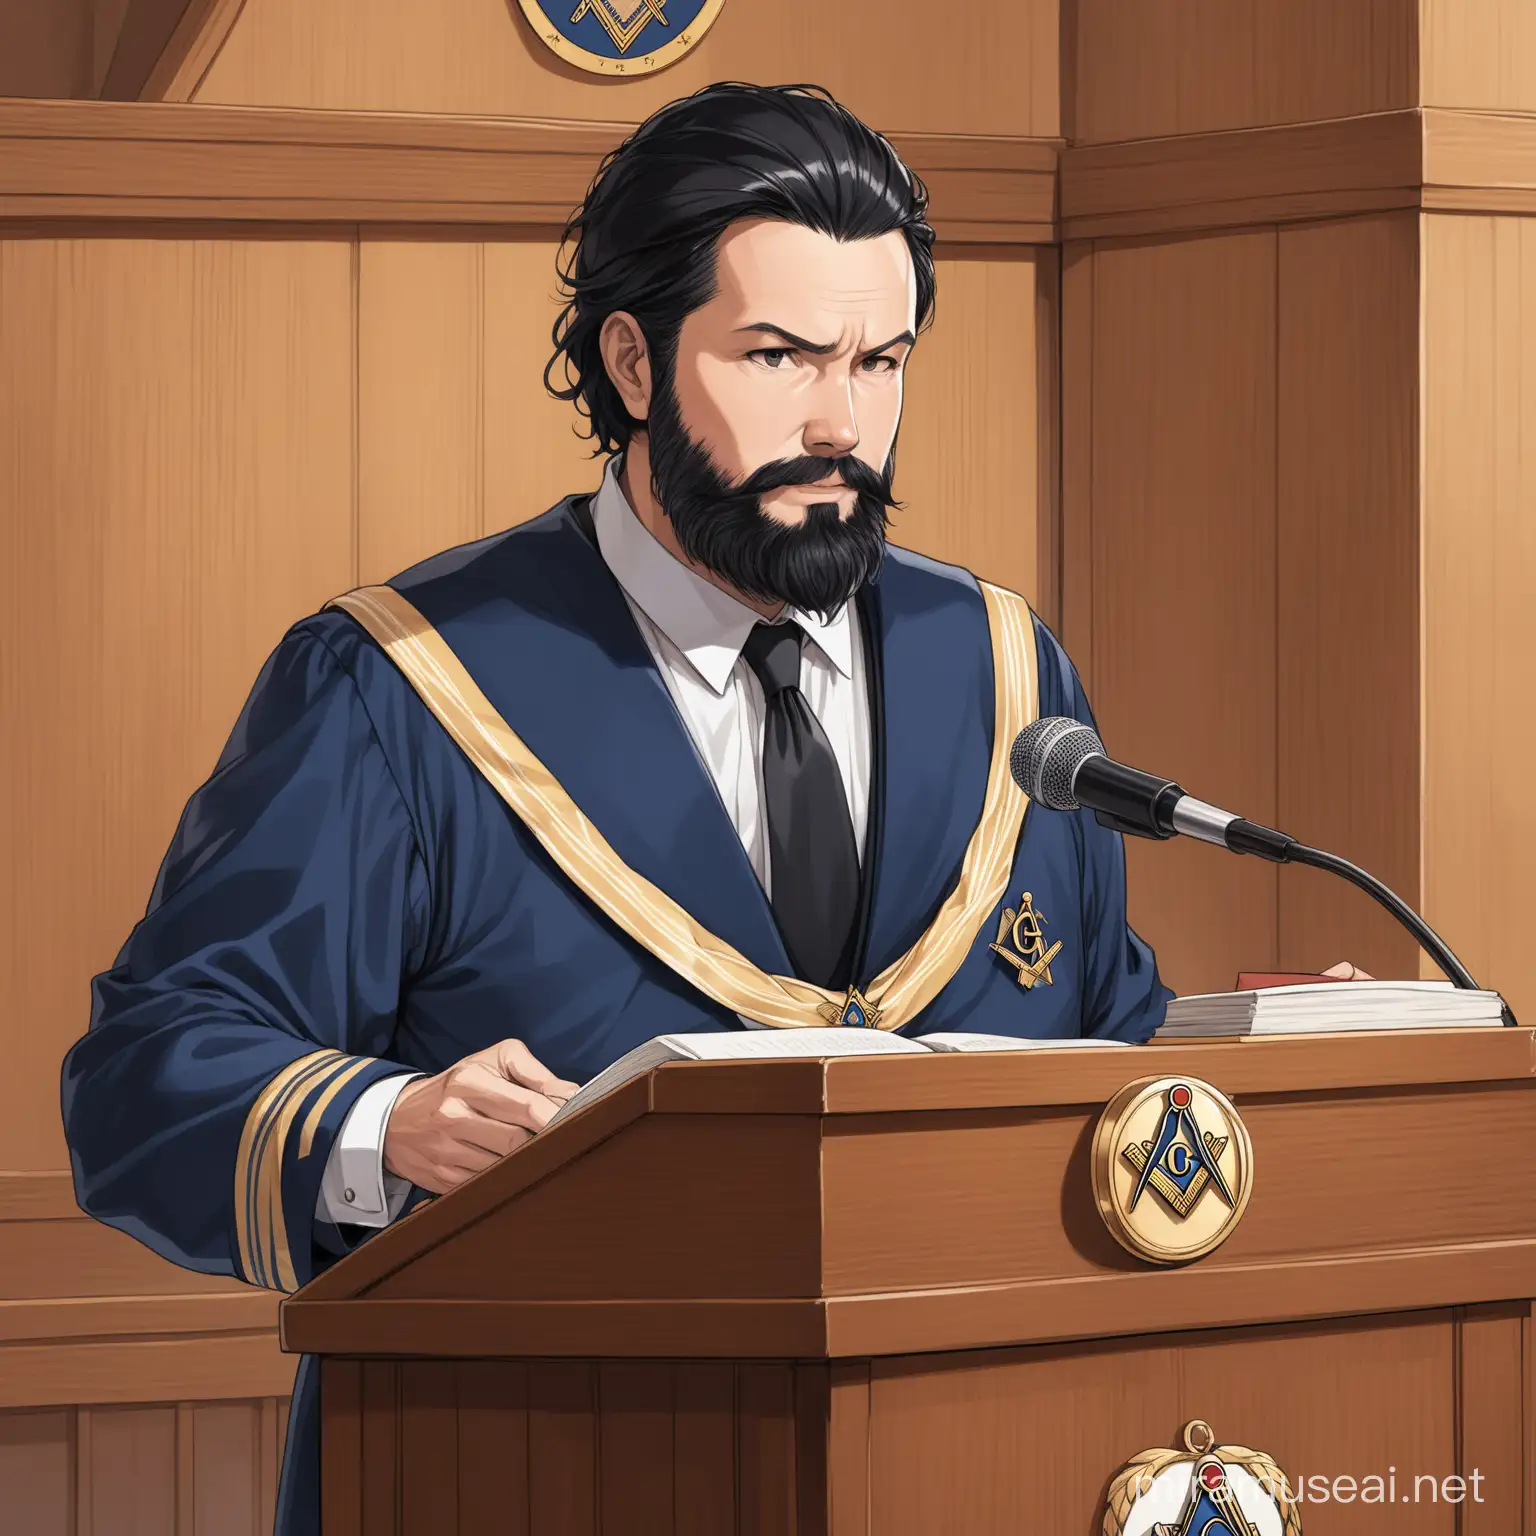 un homme 40ans légère barbe et cheveux noirs officiant en tant qu'orateur dans une loge maçonnique